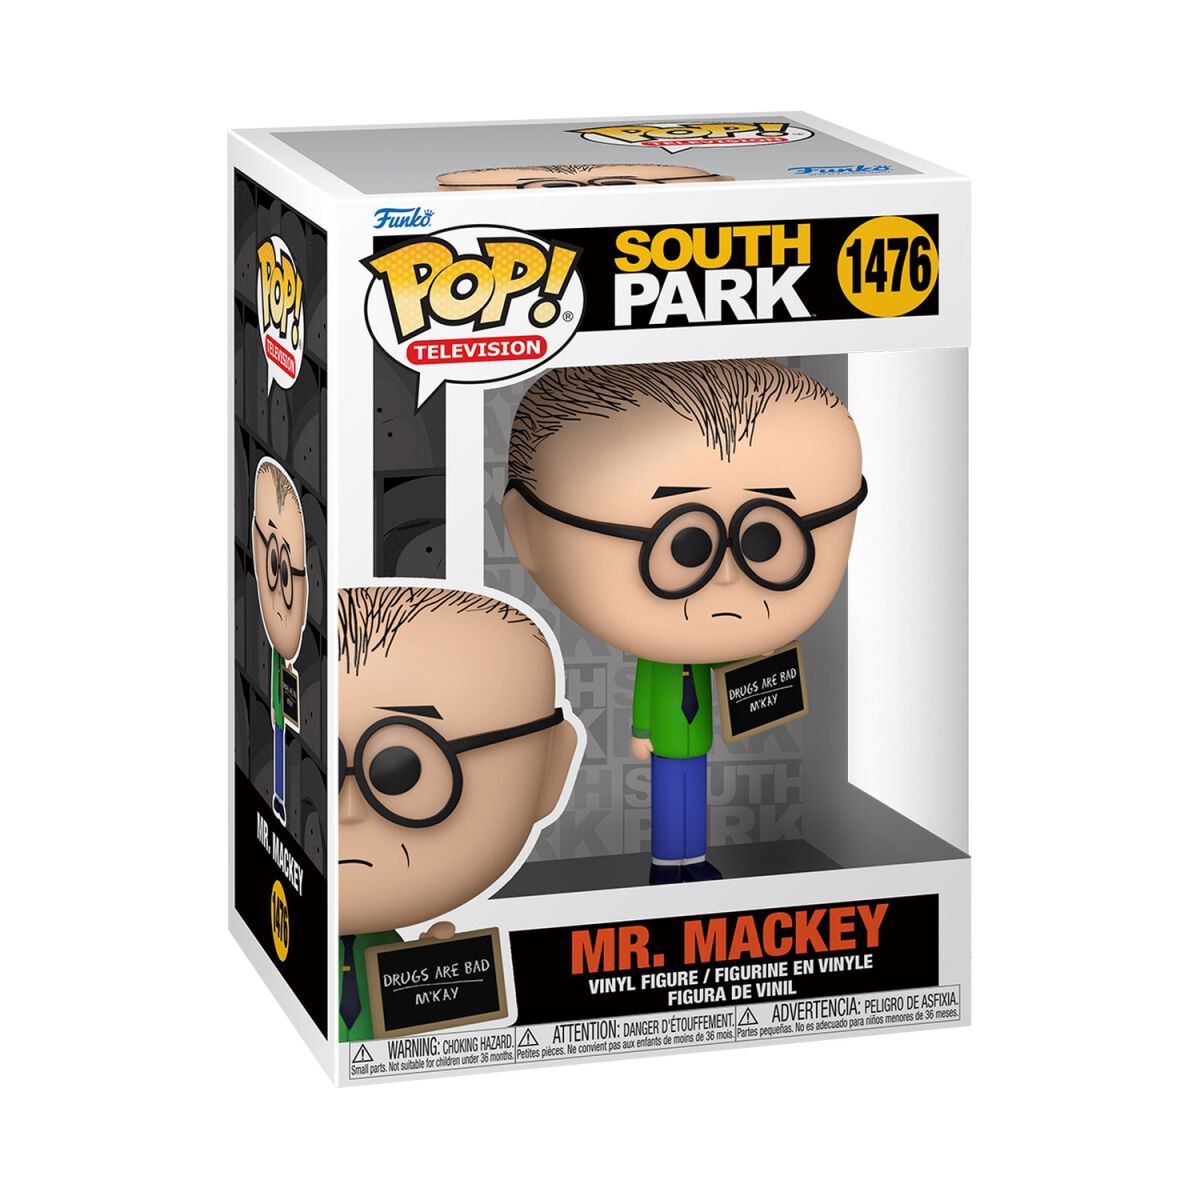 South Park - Mr. Mackey Vinyl Figur 1476 - Funko Pop! Figur - Funko Shop Deutschland - Lizenzierter Fanartikel